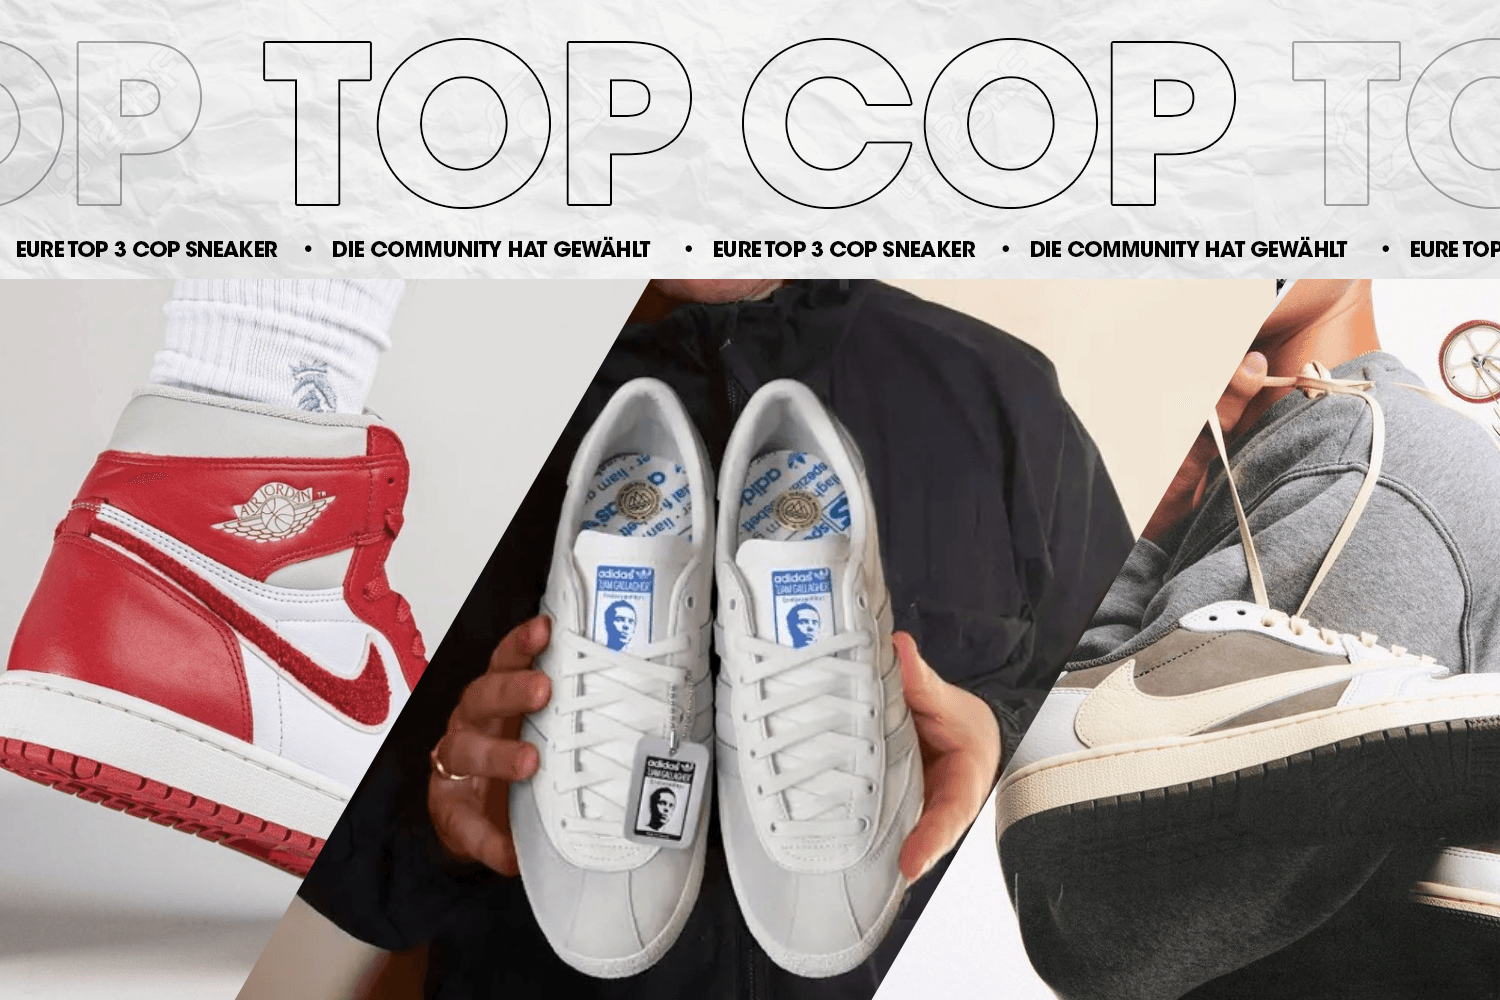 Die Community hat gewählt: Eure Top 3 Cop Sneaker Woche 29